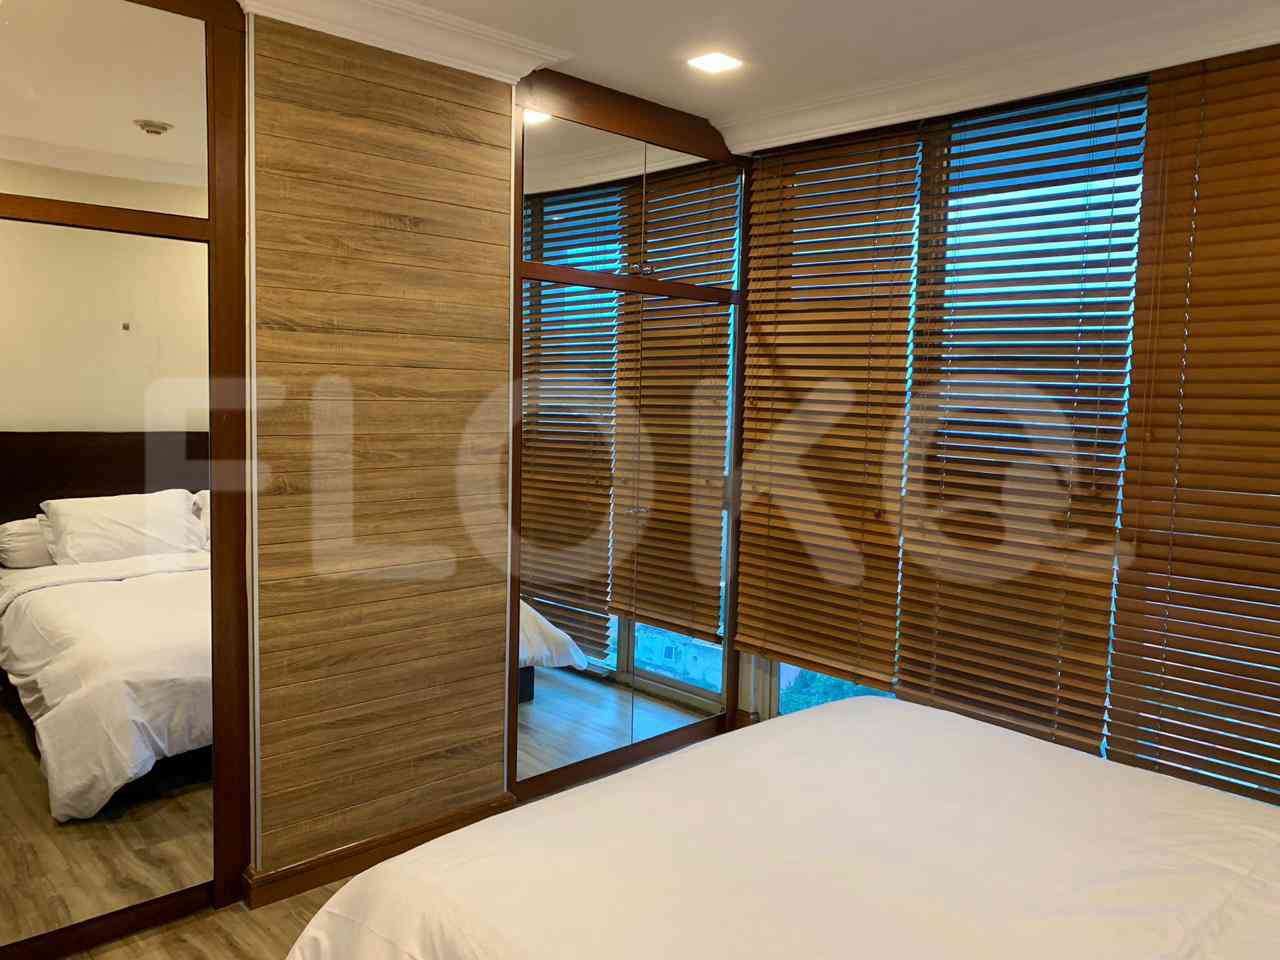 4 Bedroom on 10th Floor for Rent in Puri Imperium Apartment - fkua44 4